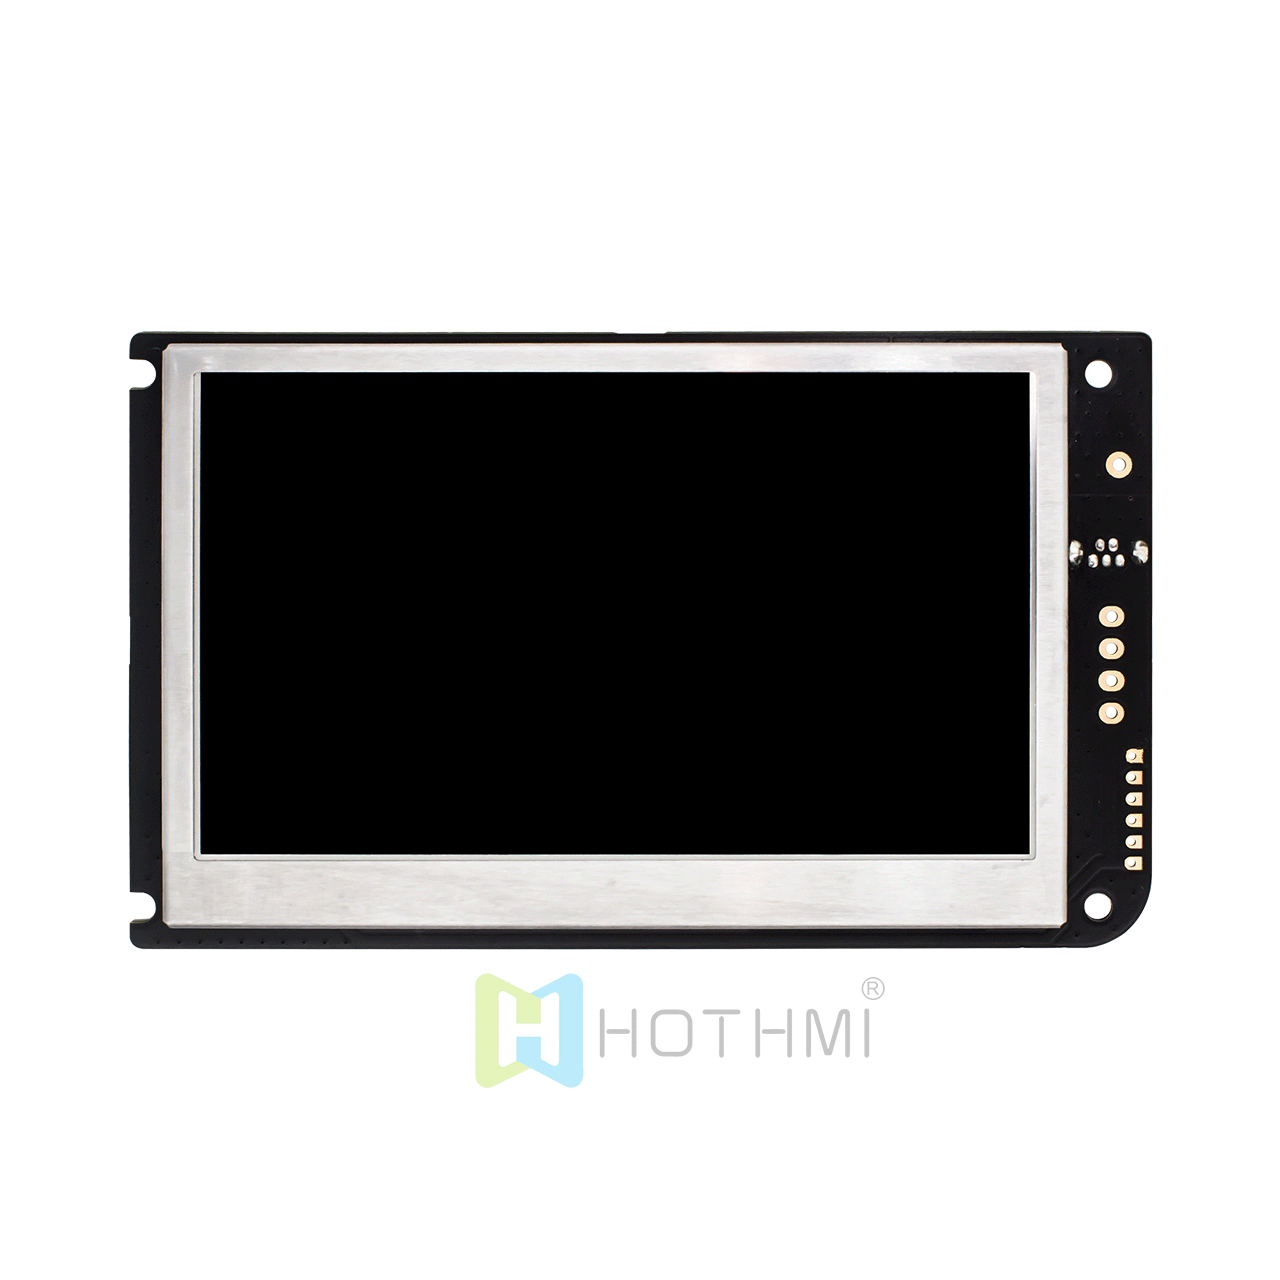 4.3英寸800x480点阵 智能串口屏 TFT液晶显示屏模块URAT HMI IPS 阳光下可读兼容树莓派